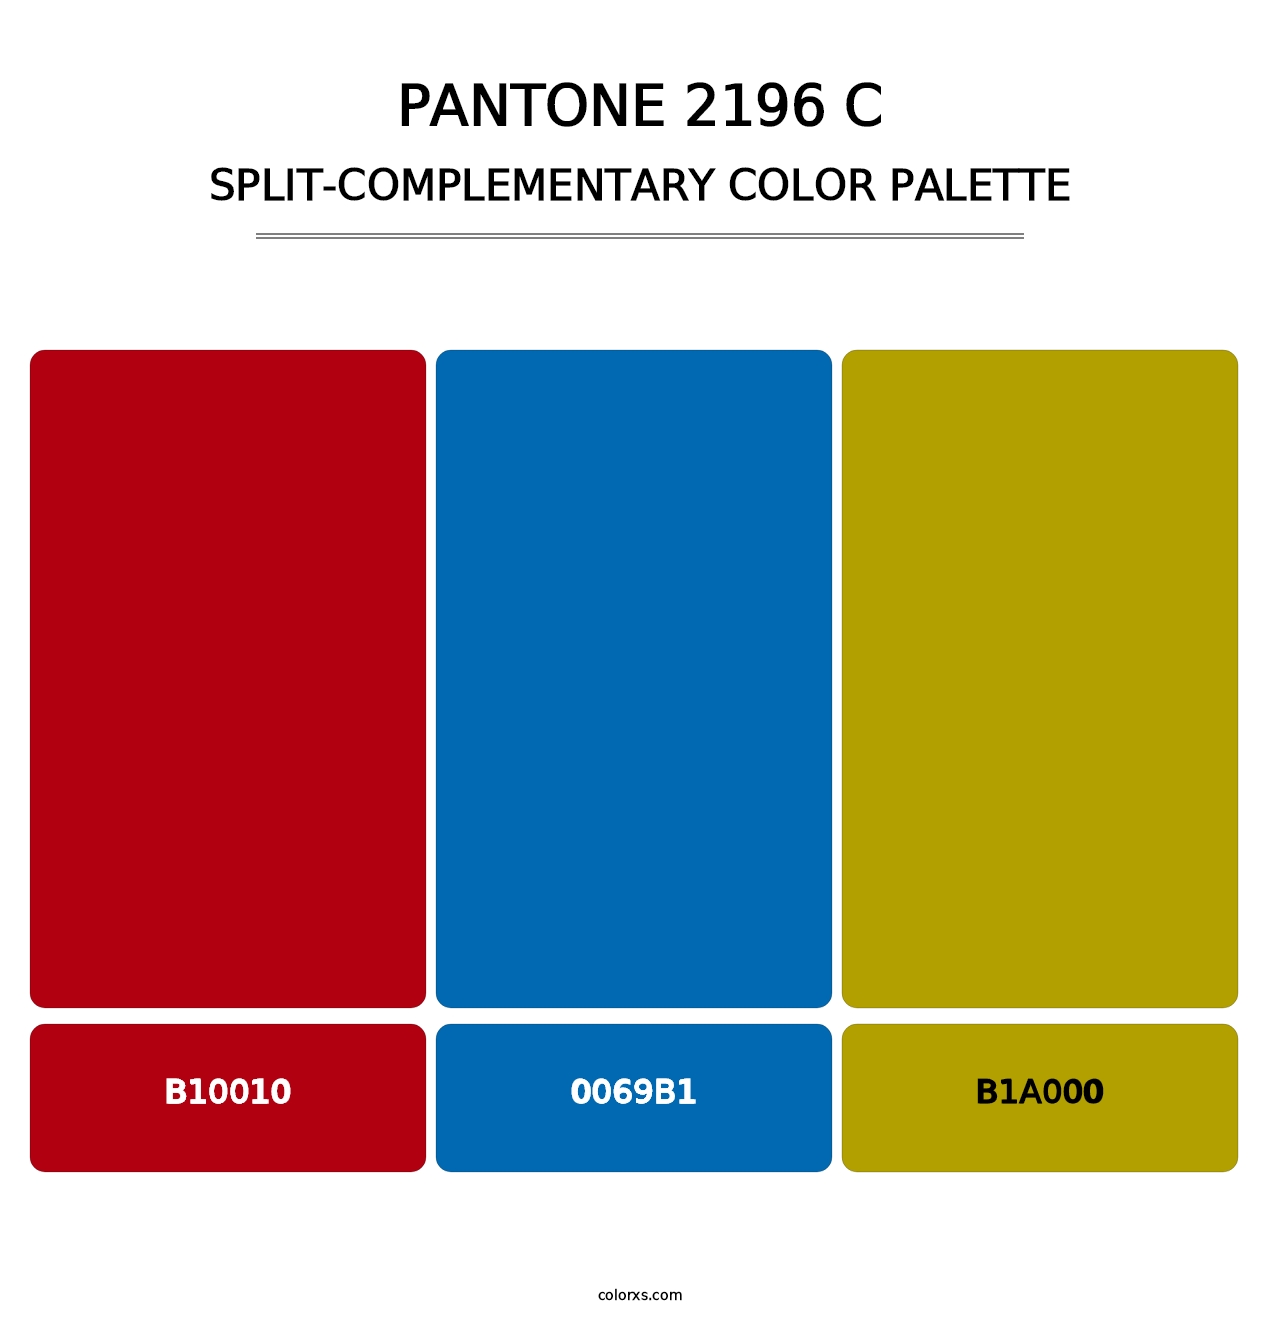 PANTONE 2196 C - Split-Complementary Color Palette